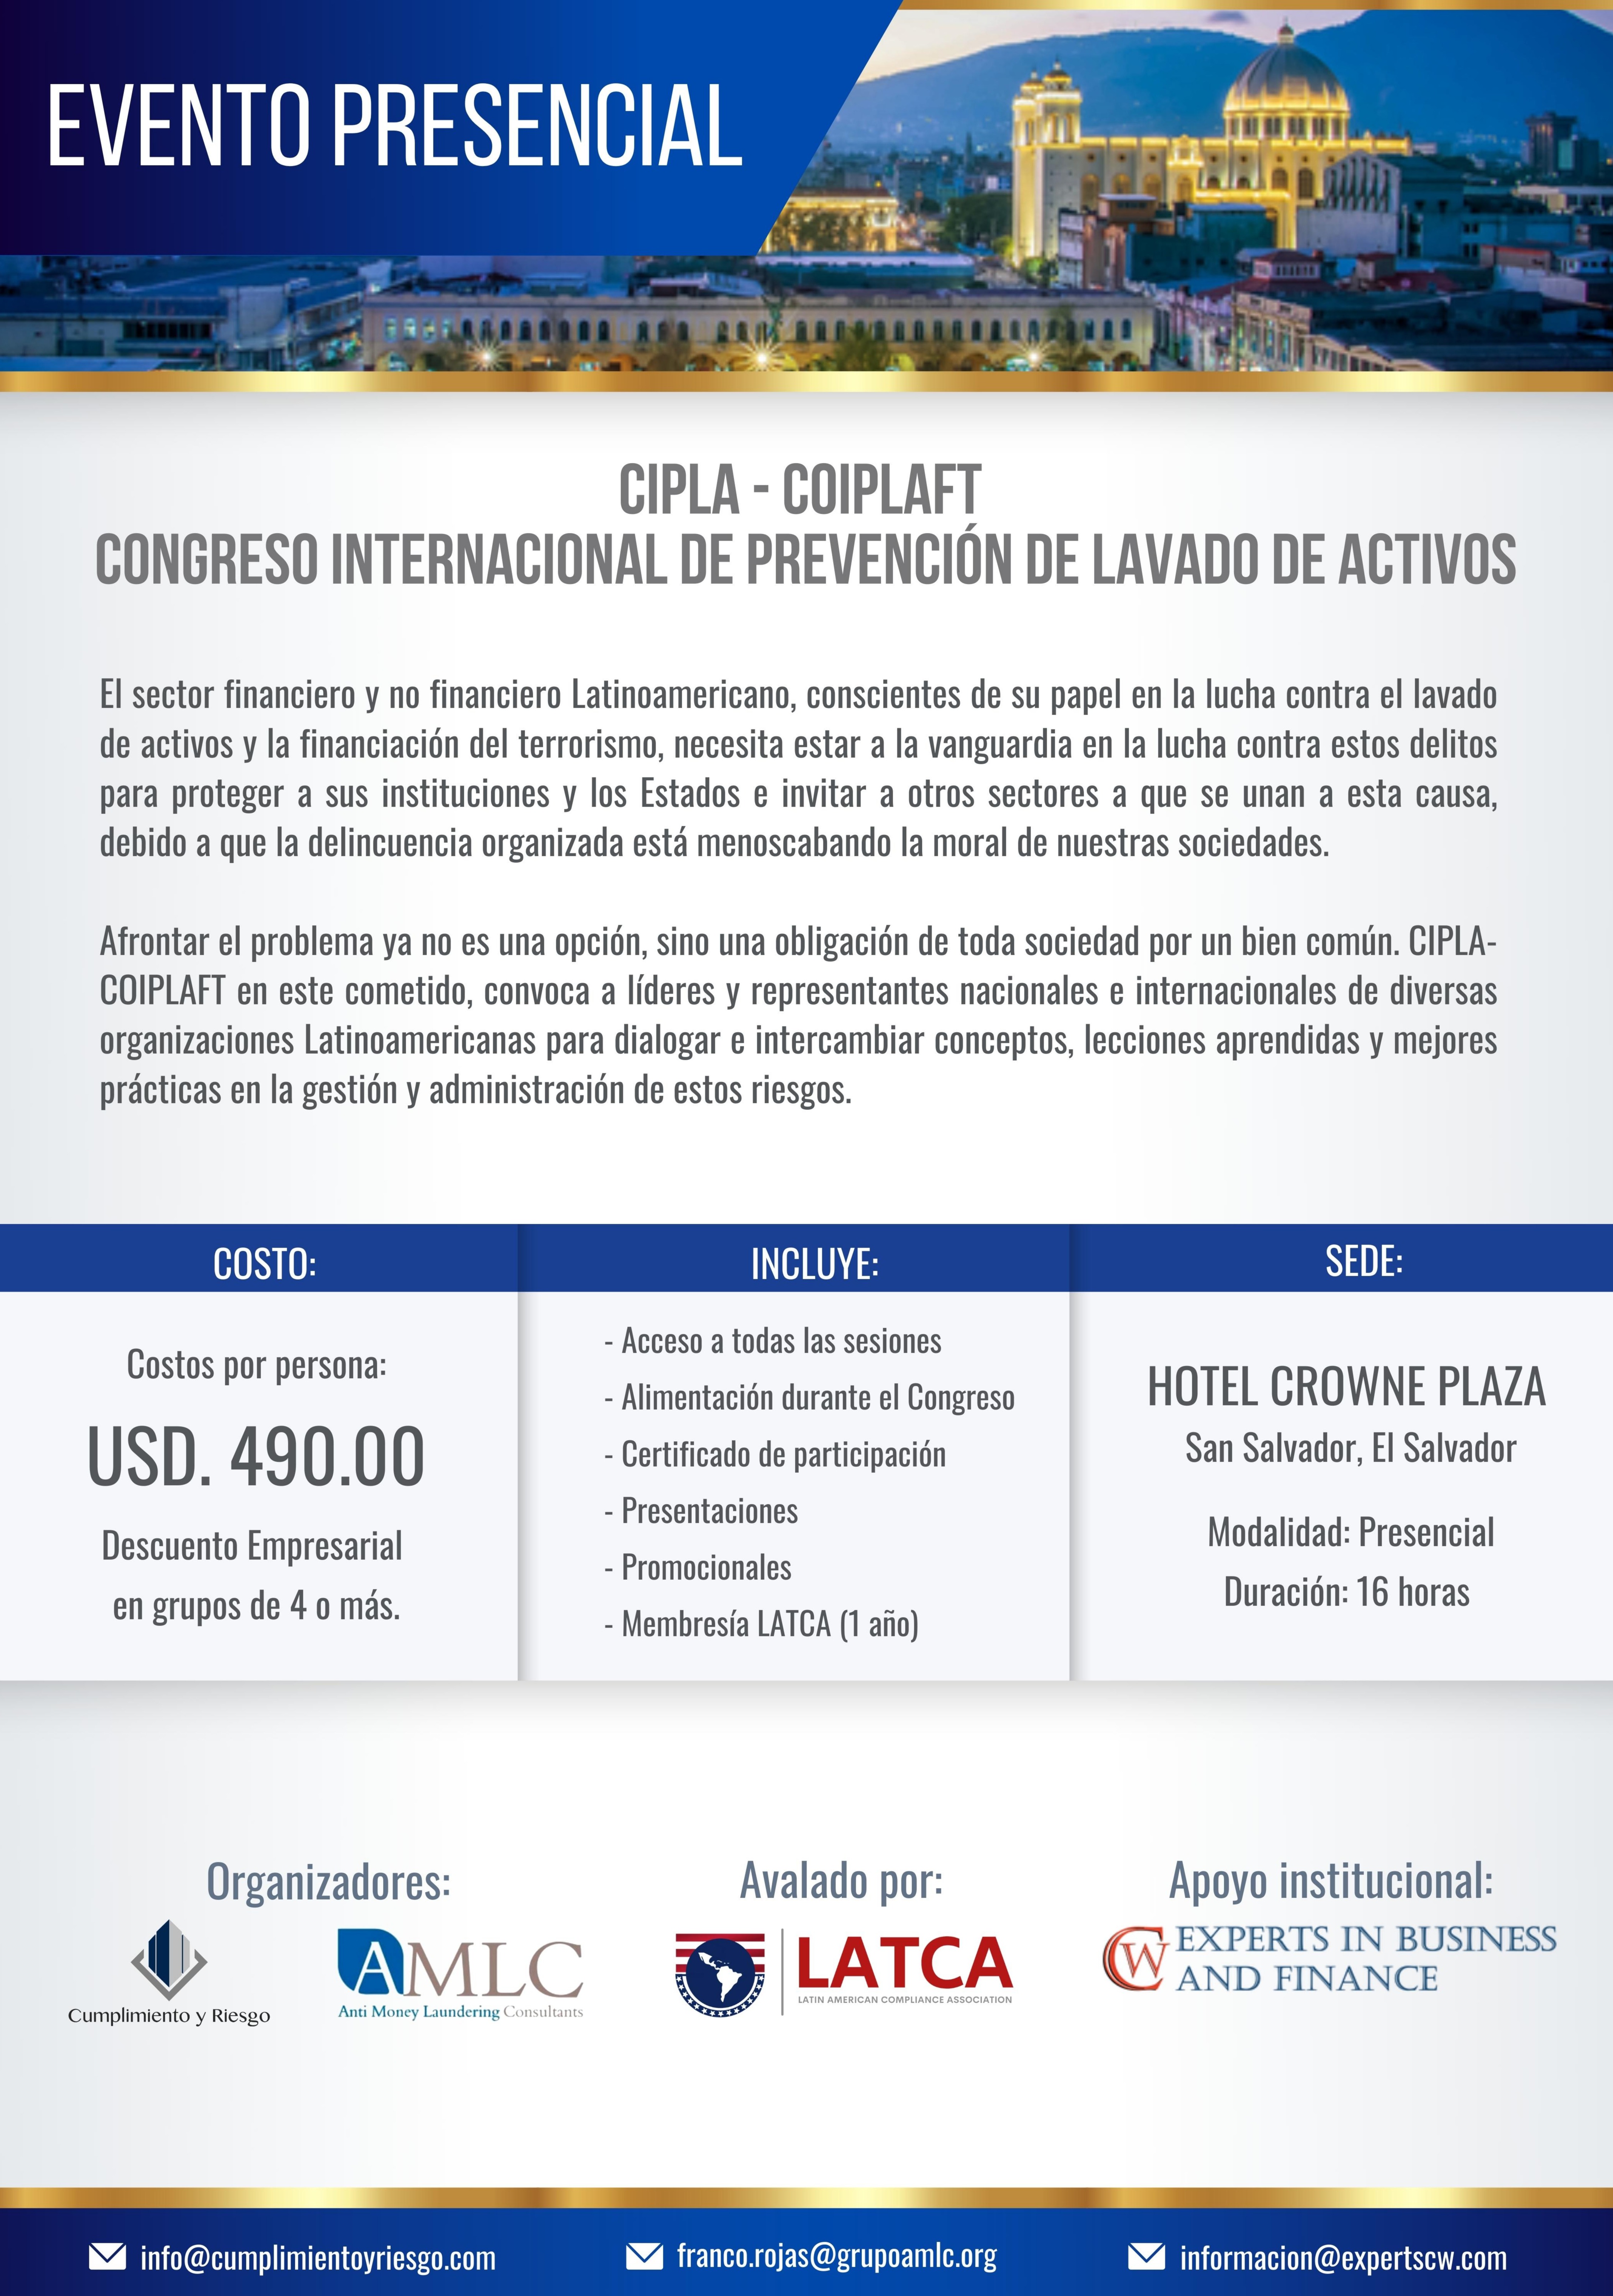 CONGRESO INTERNACIONAL CIPLA COIPLAFT 2022 PRESENCIAL, EL SALVADOR